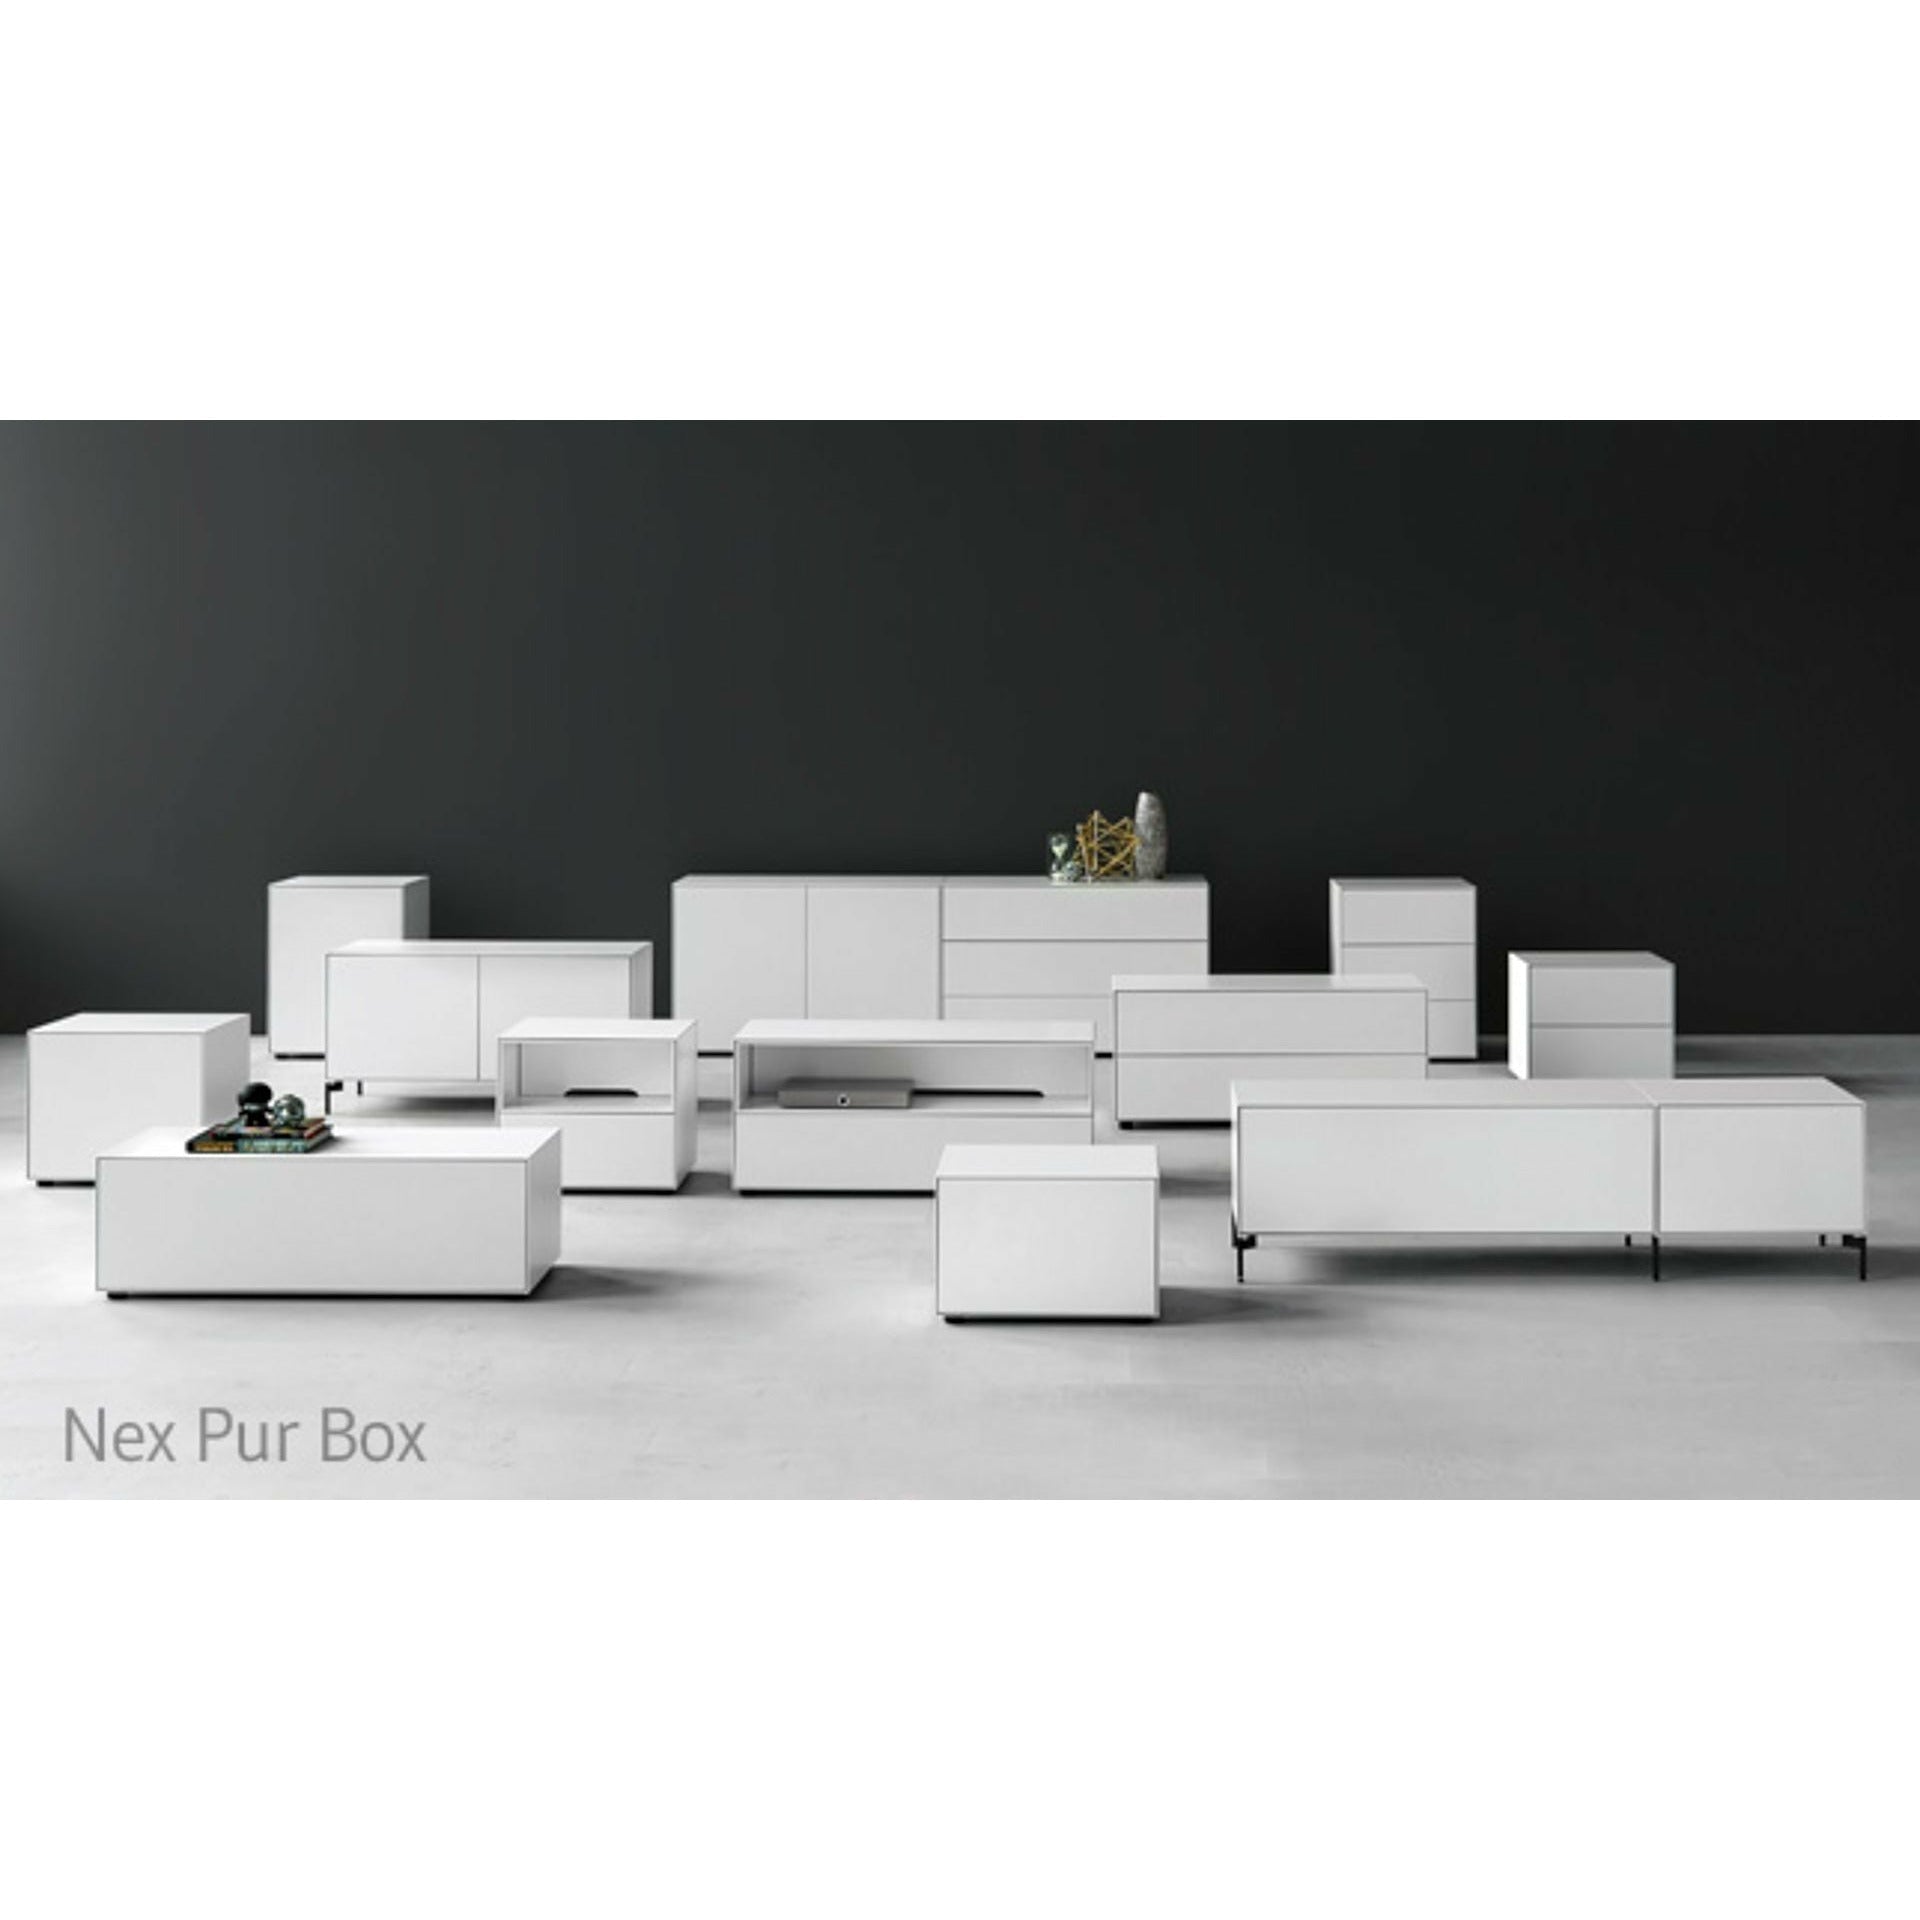 Piure NEX PUR BOX PORTE HX W 75X180 cm, 1 étagère